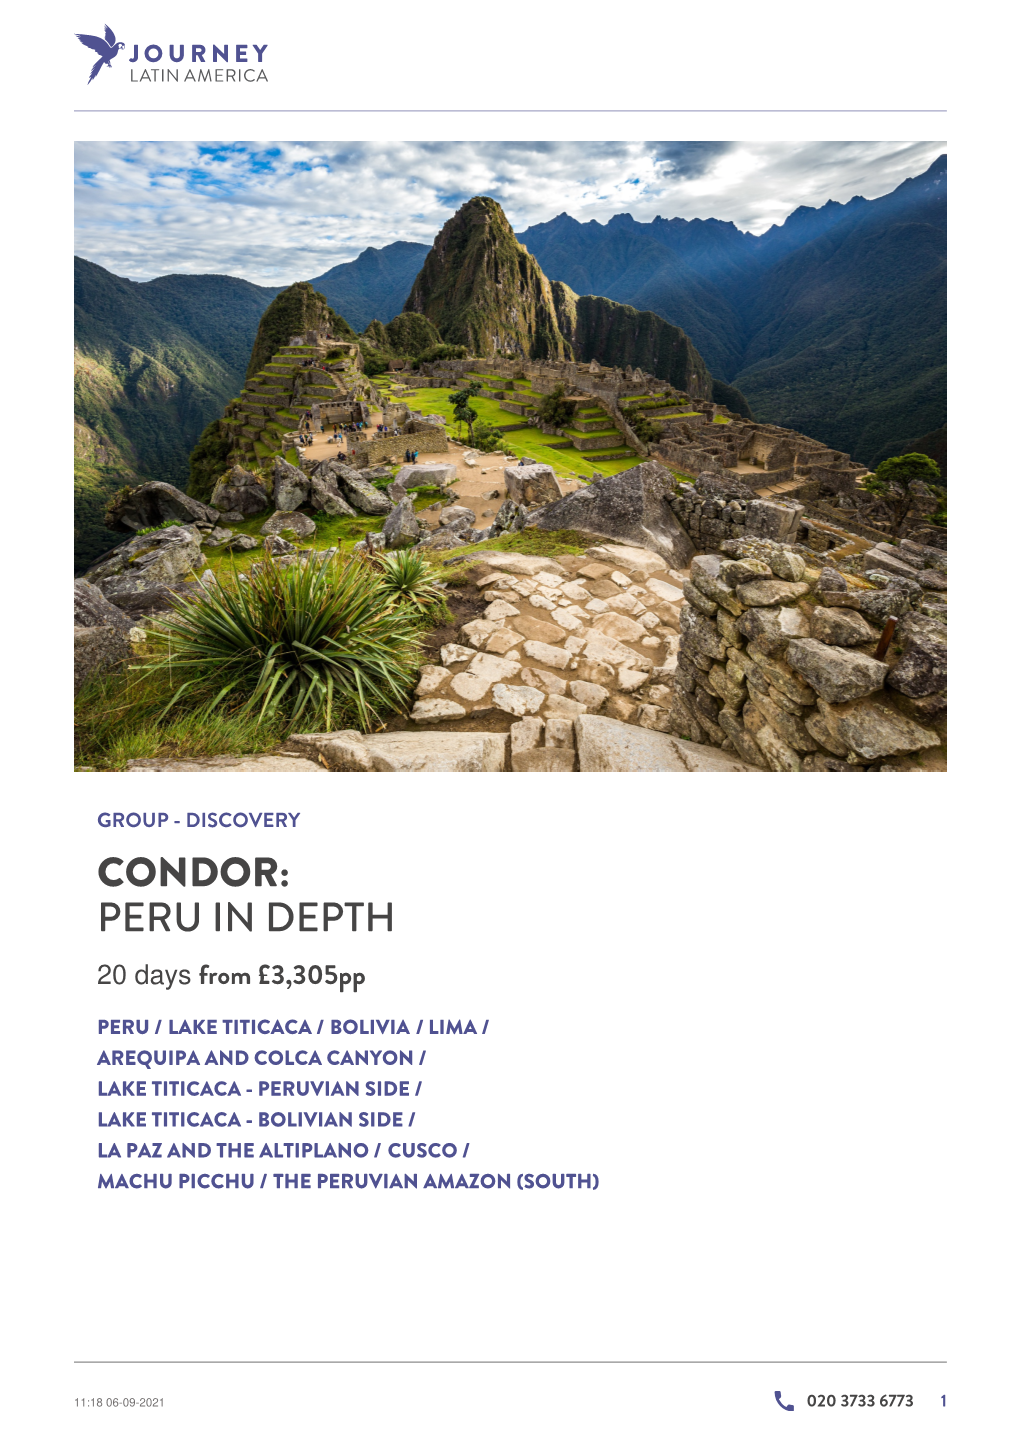 Condor: Peru in Depth